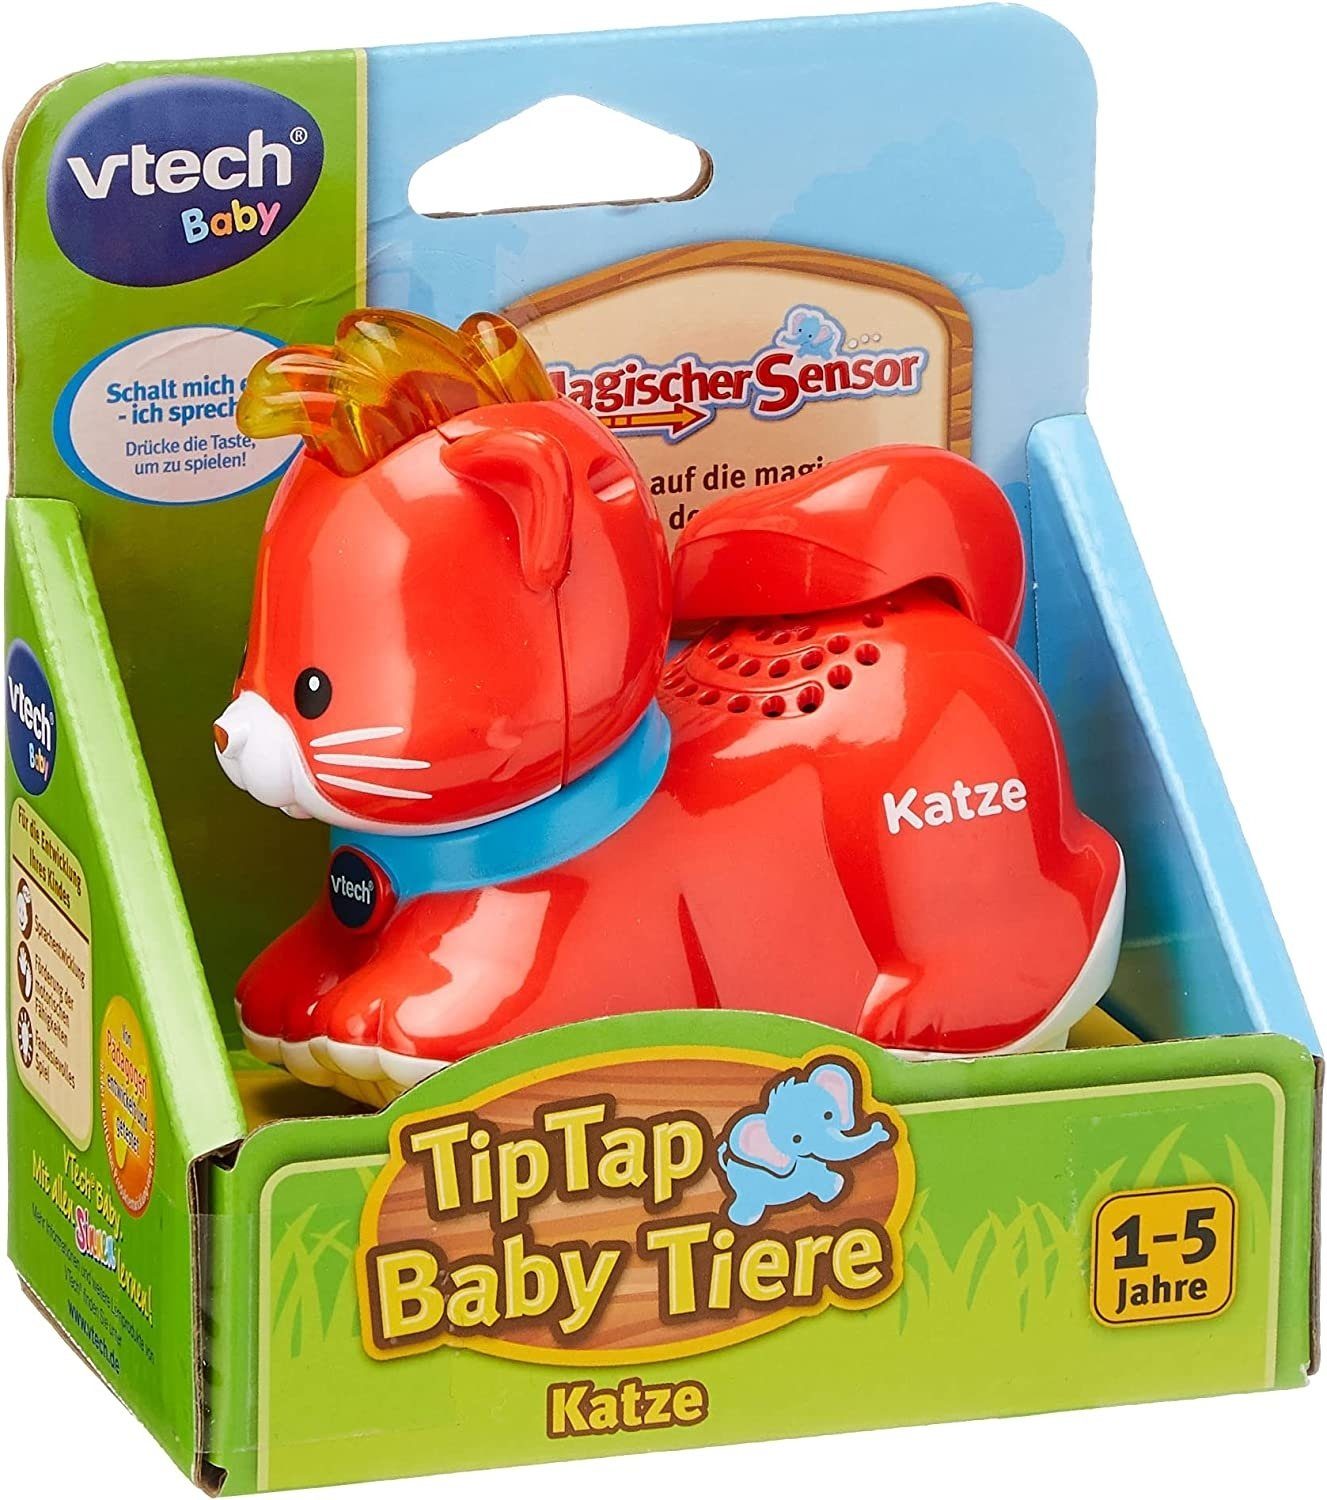 Vtech® Lernspielzeug VTech - Tip Tap Tiere - Katze, rot - Spricht themenbezogene Sätze, singt und macht lustige Geräusche